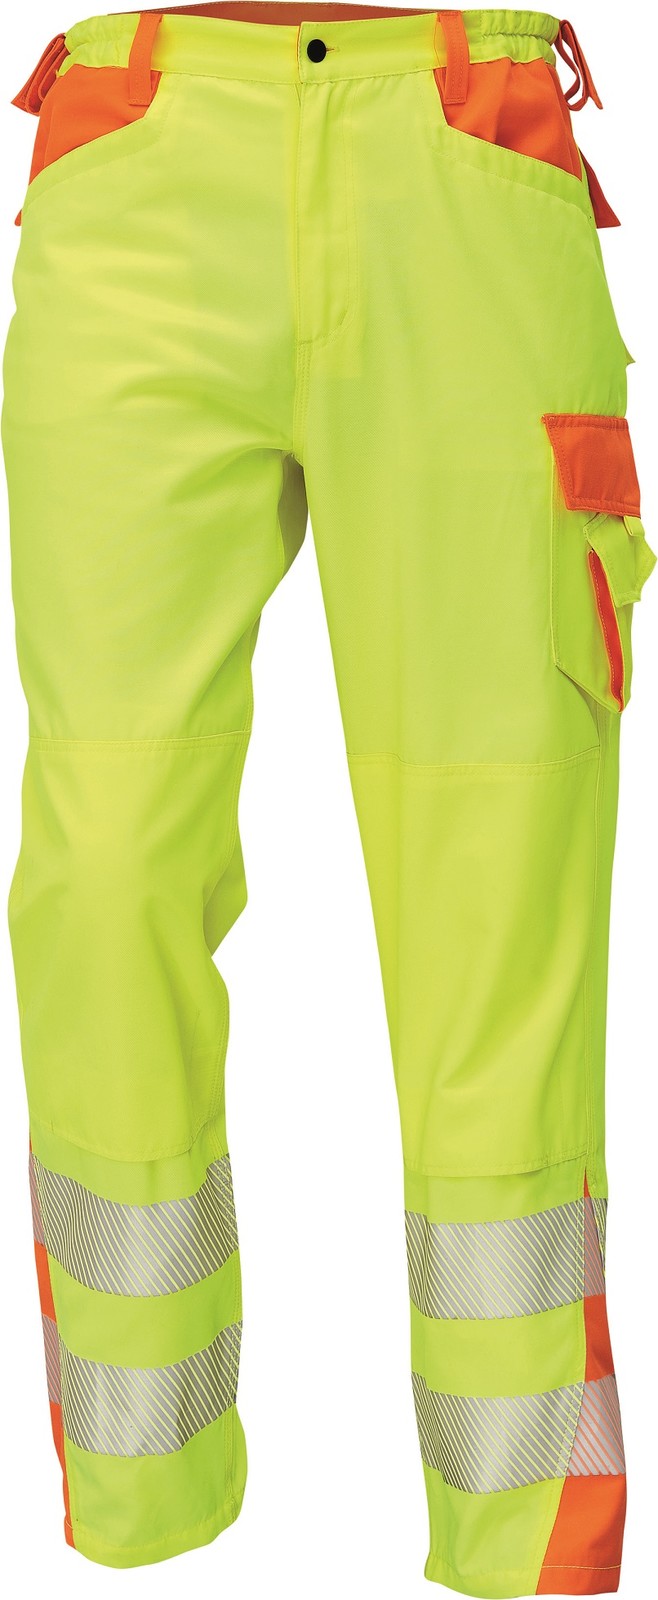 Reflexné pracovné nohavice Cerva Latton - veľkosť: 46, farba: žltá/oranžová